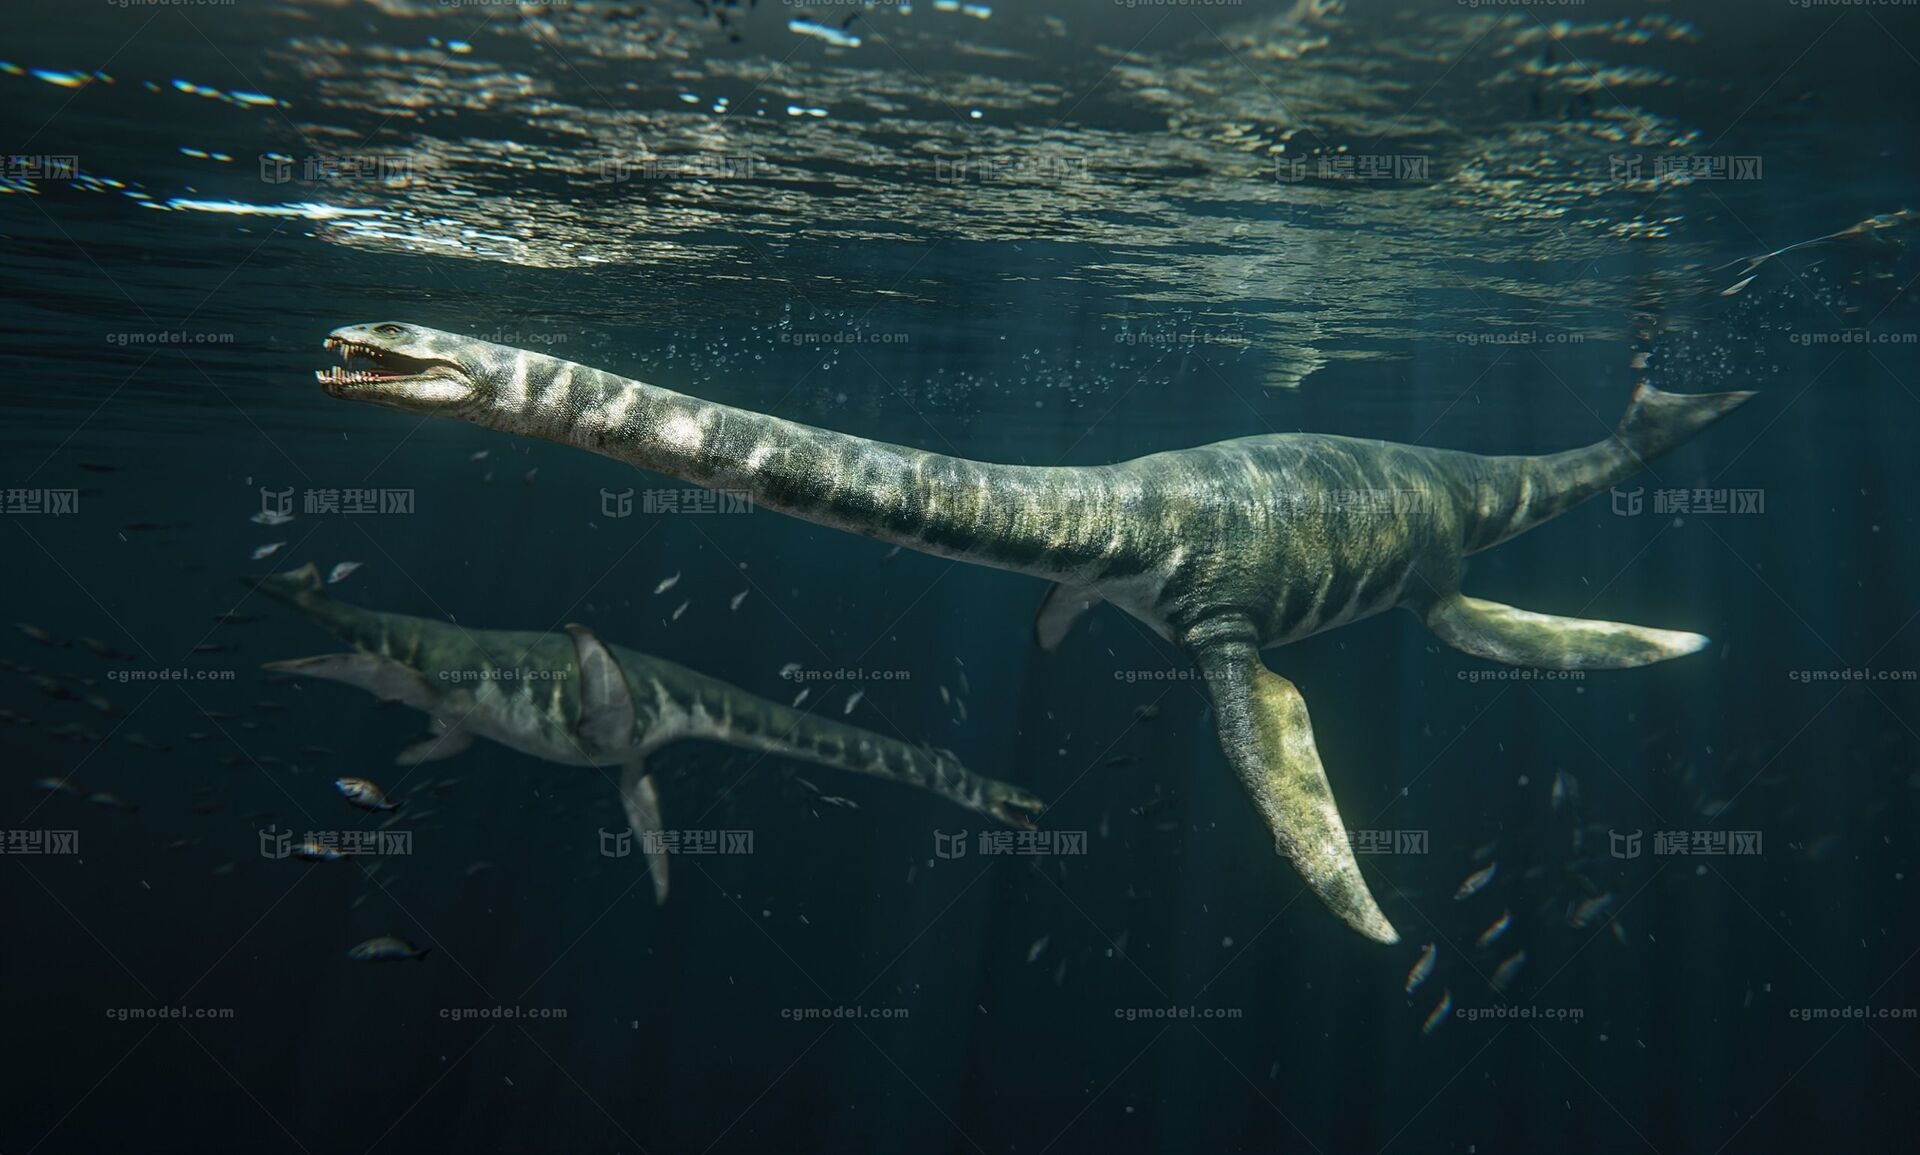 侏罗纪第一代海王竟然是短脖子的蛇颈龙 - 知乎